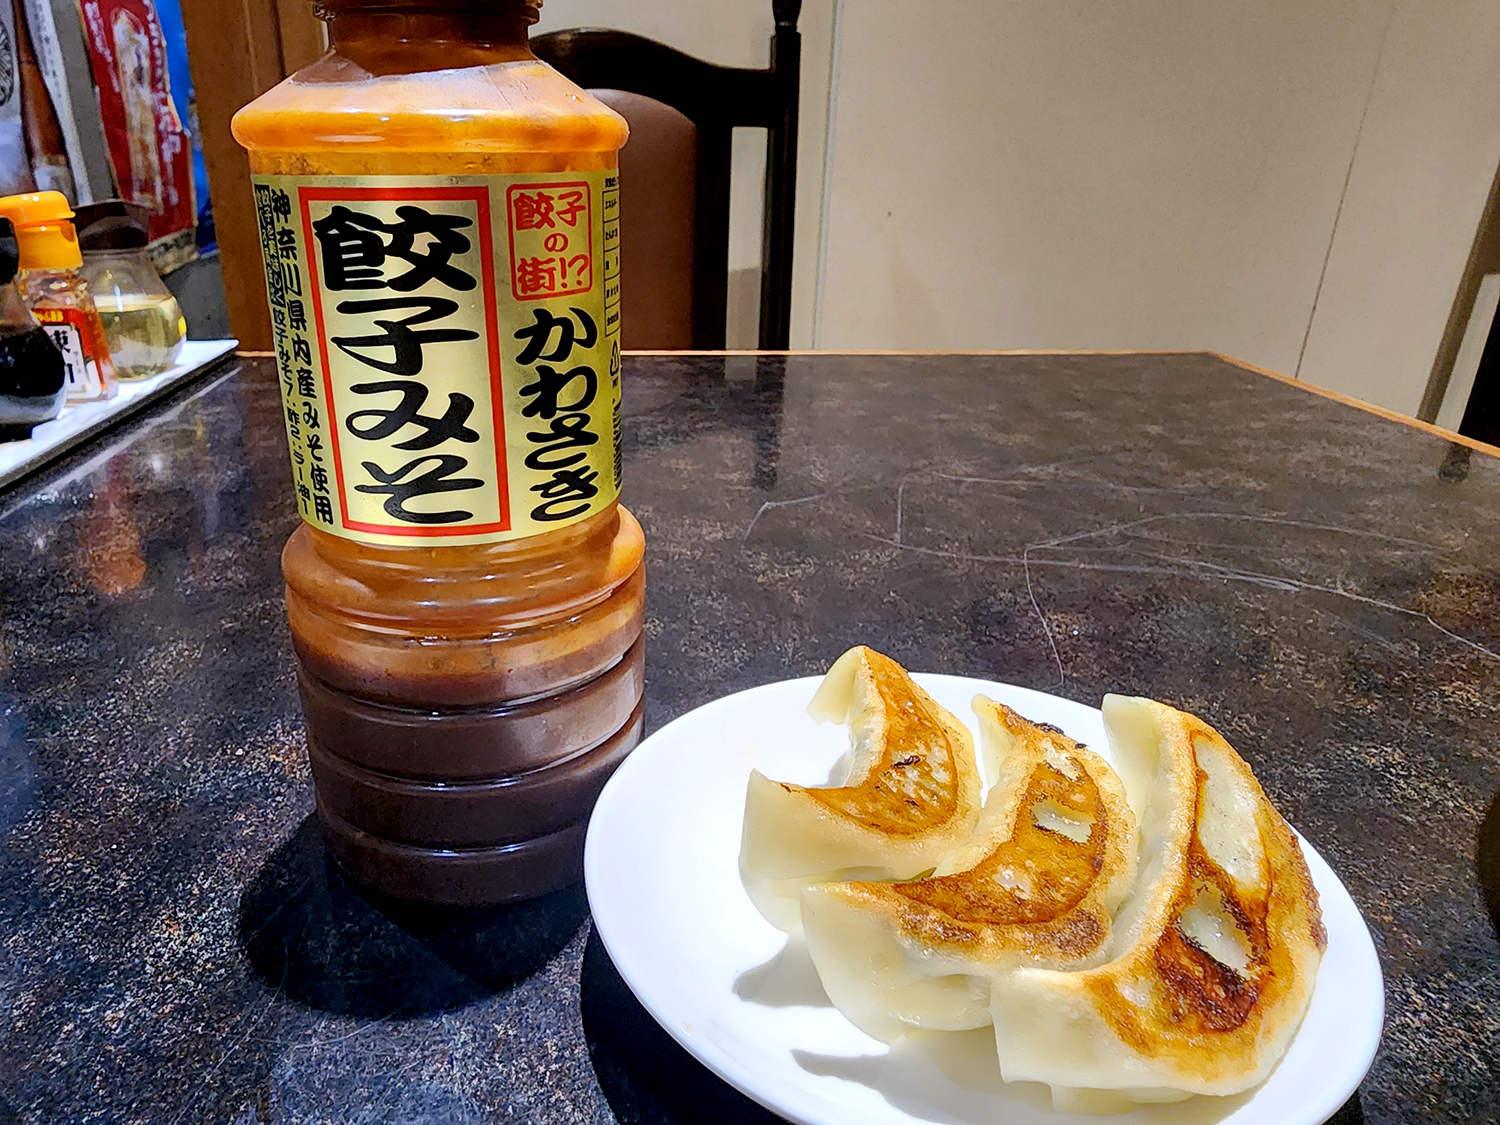 川崎で餃子といえば“かわさき餃子みそ”。